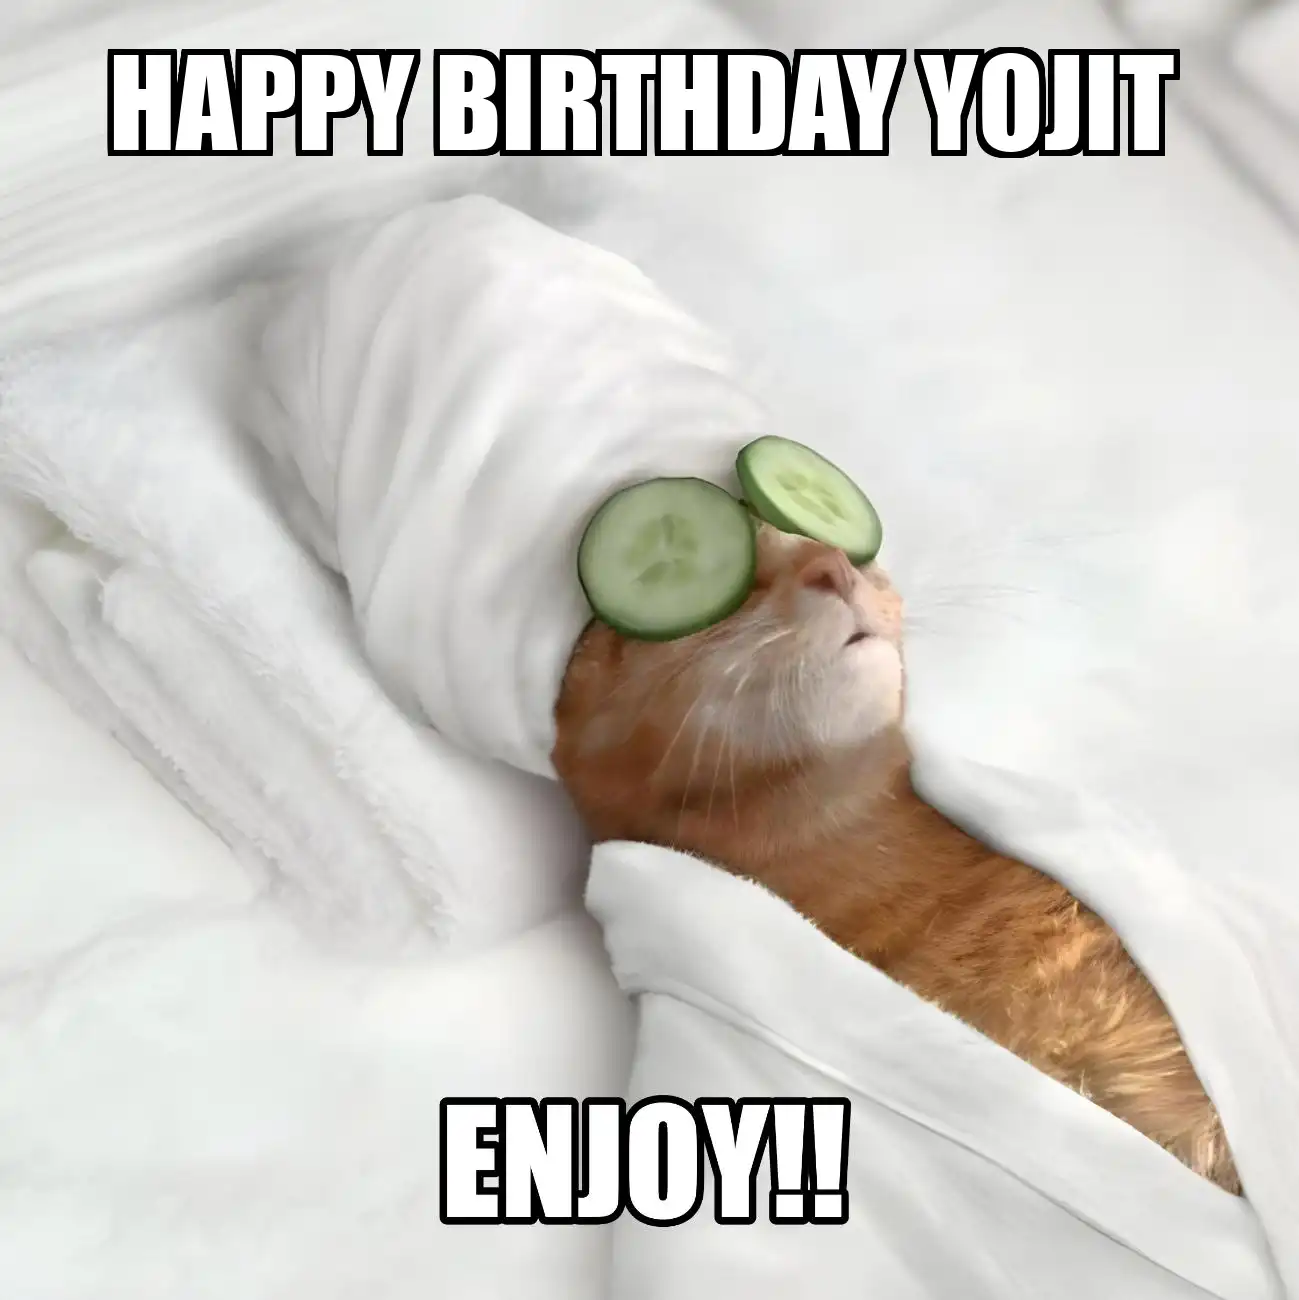 Happy Birthday Yojit Enjoy Cat Meme